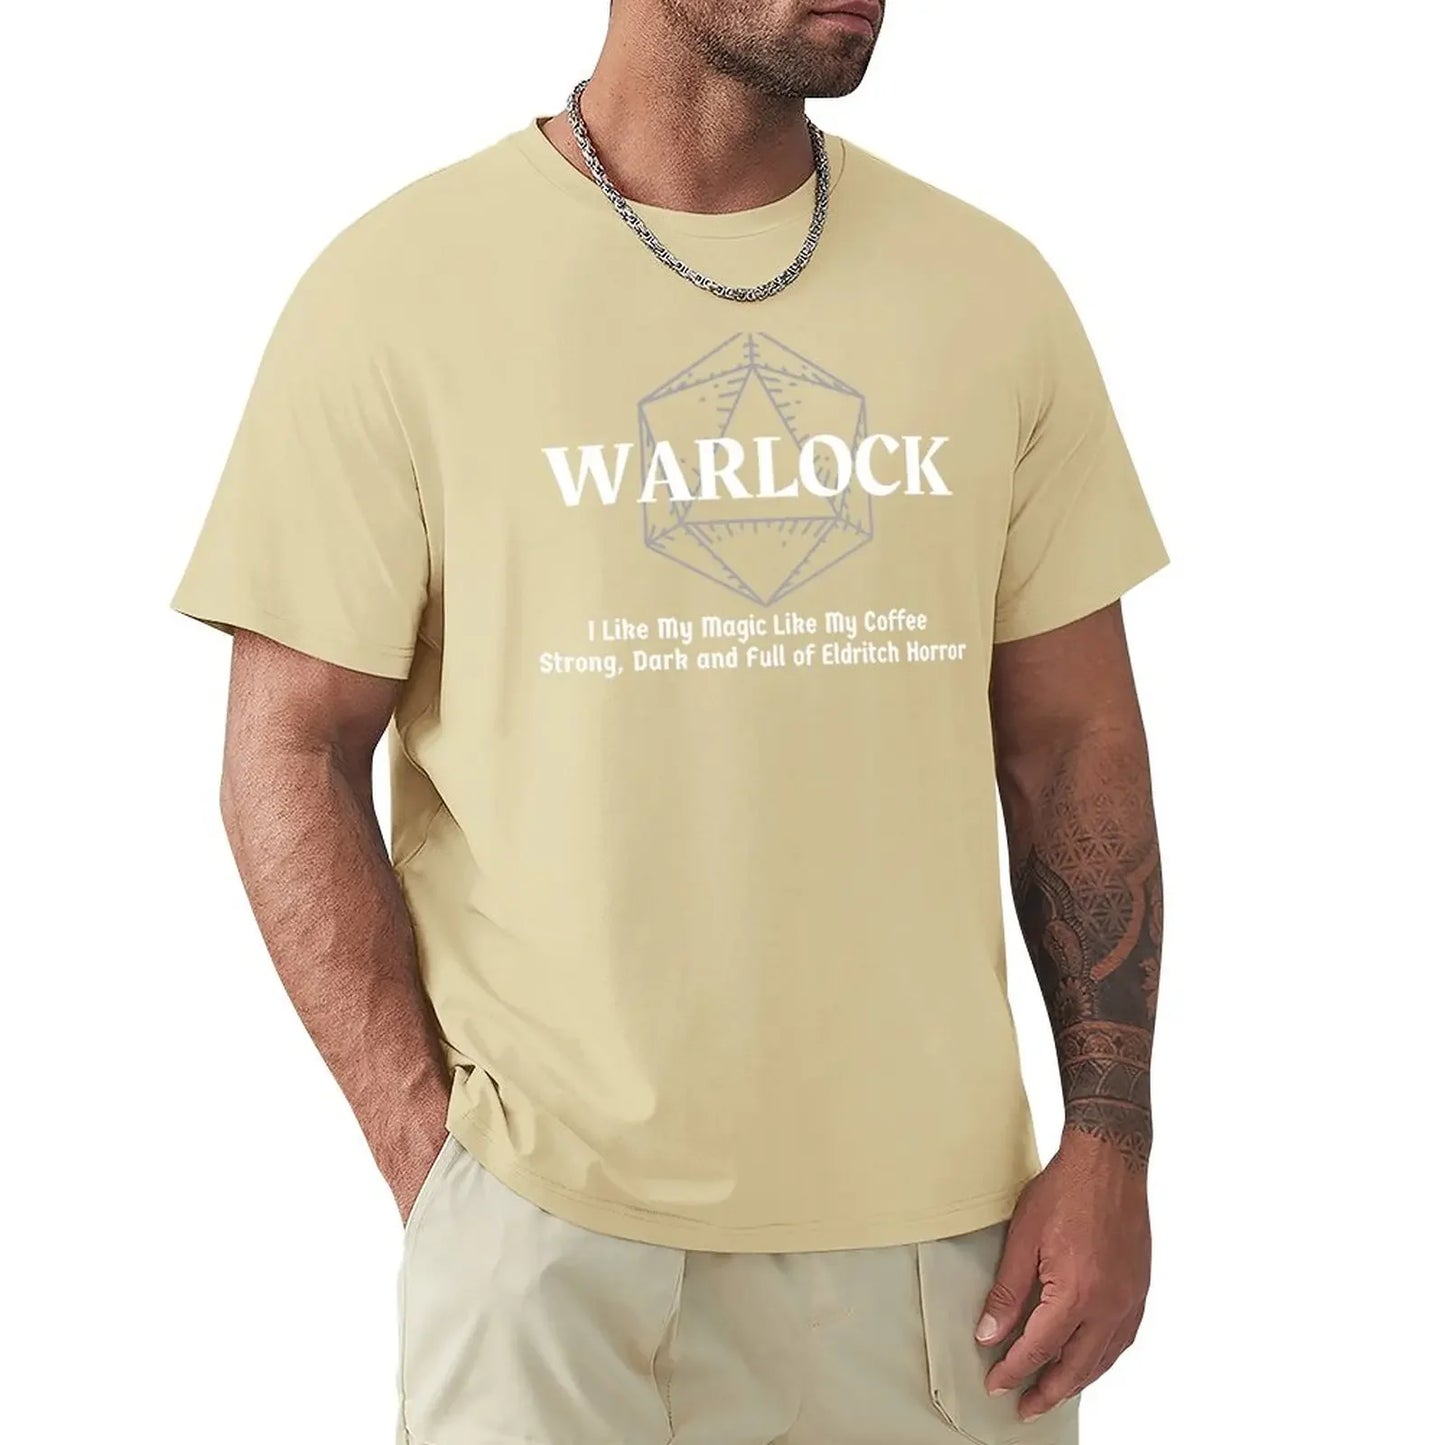 J'aime ma magie comme mon café DnD Warlock classe T-Shirt vêtements mignons blancs hommes t-shirts drôles